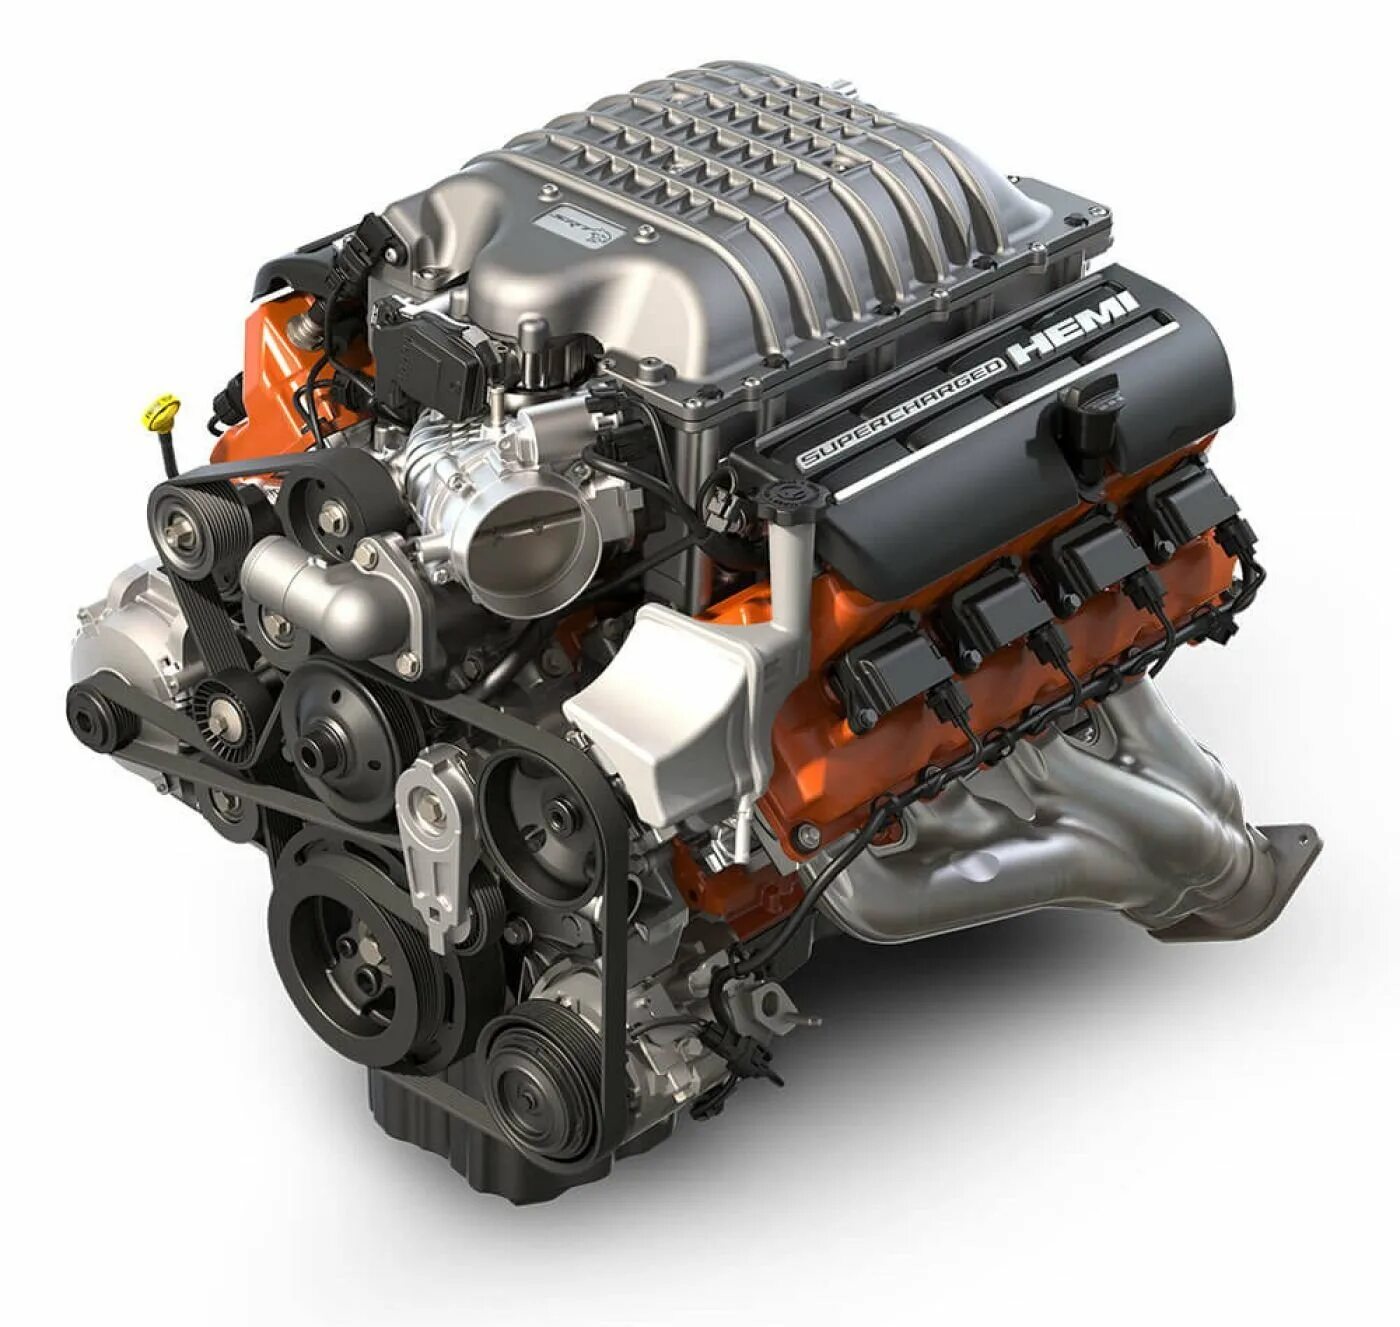 Куплю двигатель автомобиля. Мотор Хеми 6.2. 6.2 Hemi v8 Hellcat. Dodge Hemi srt 6.2 мотор. V8 6.2 Supercharged Hemi.